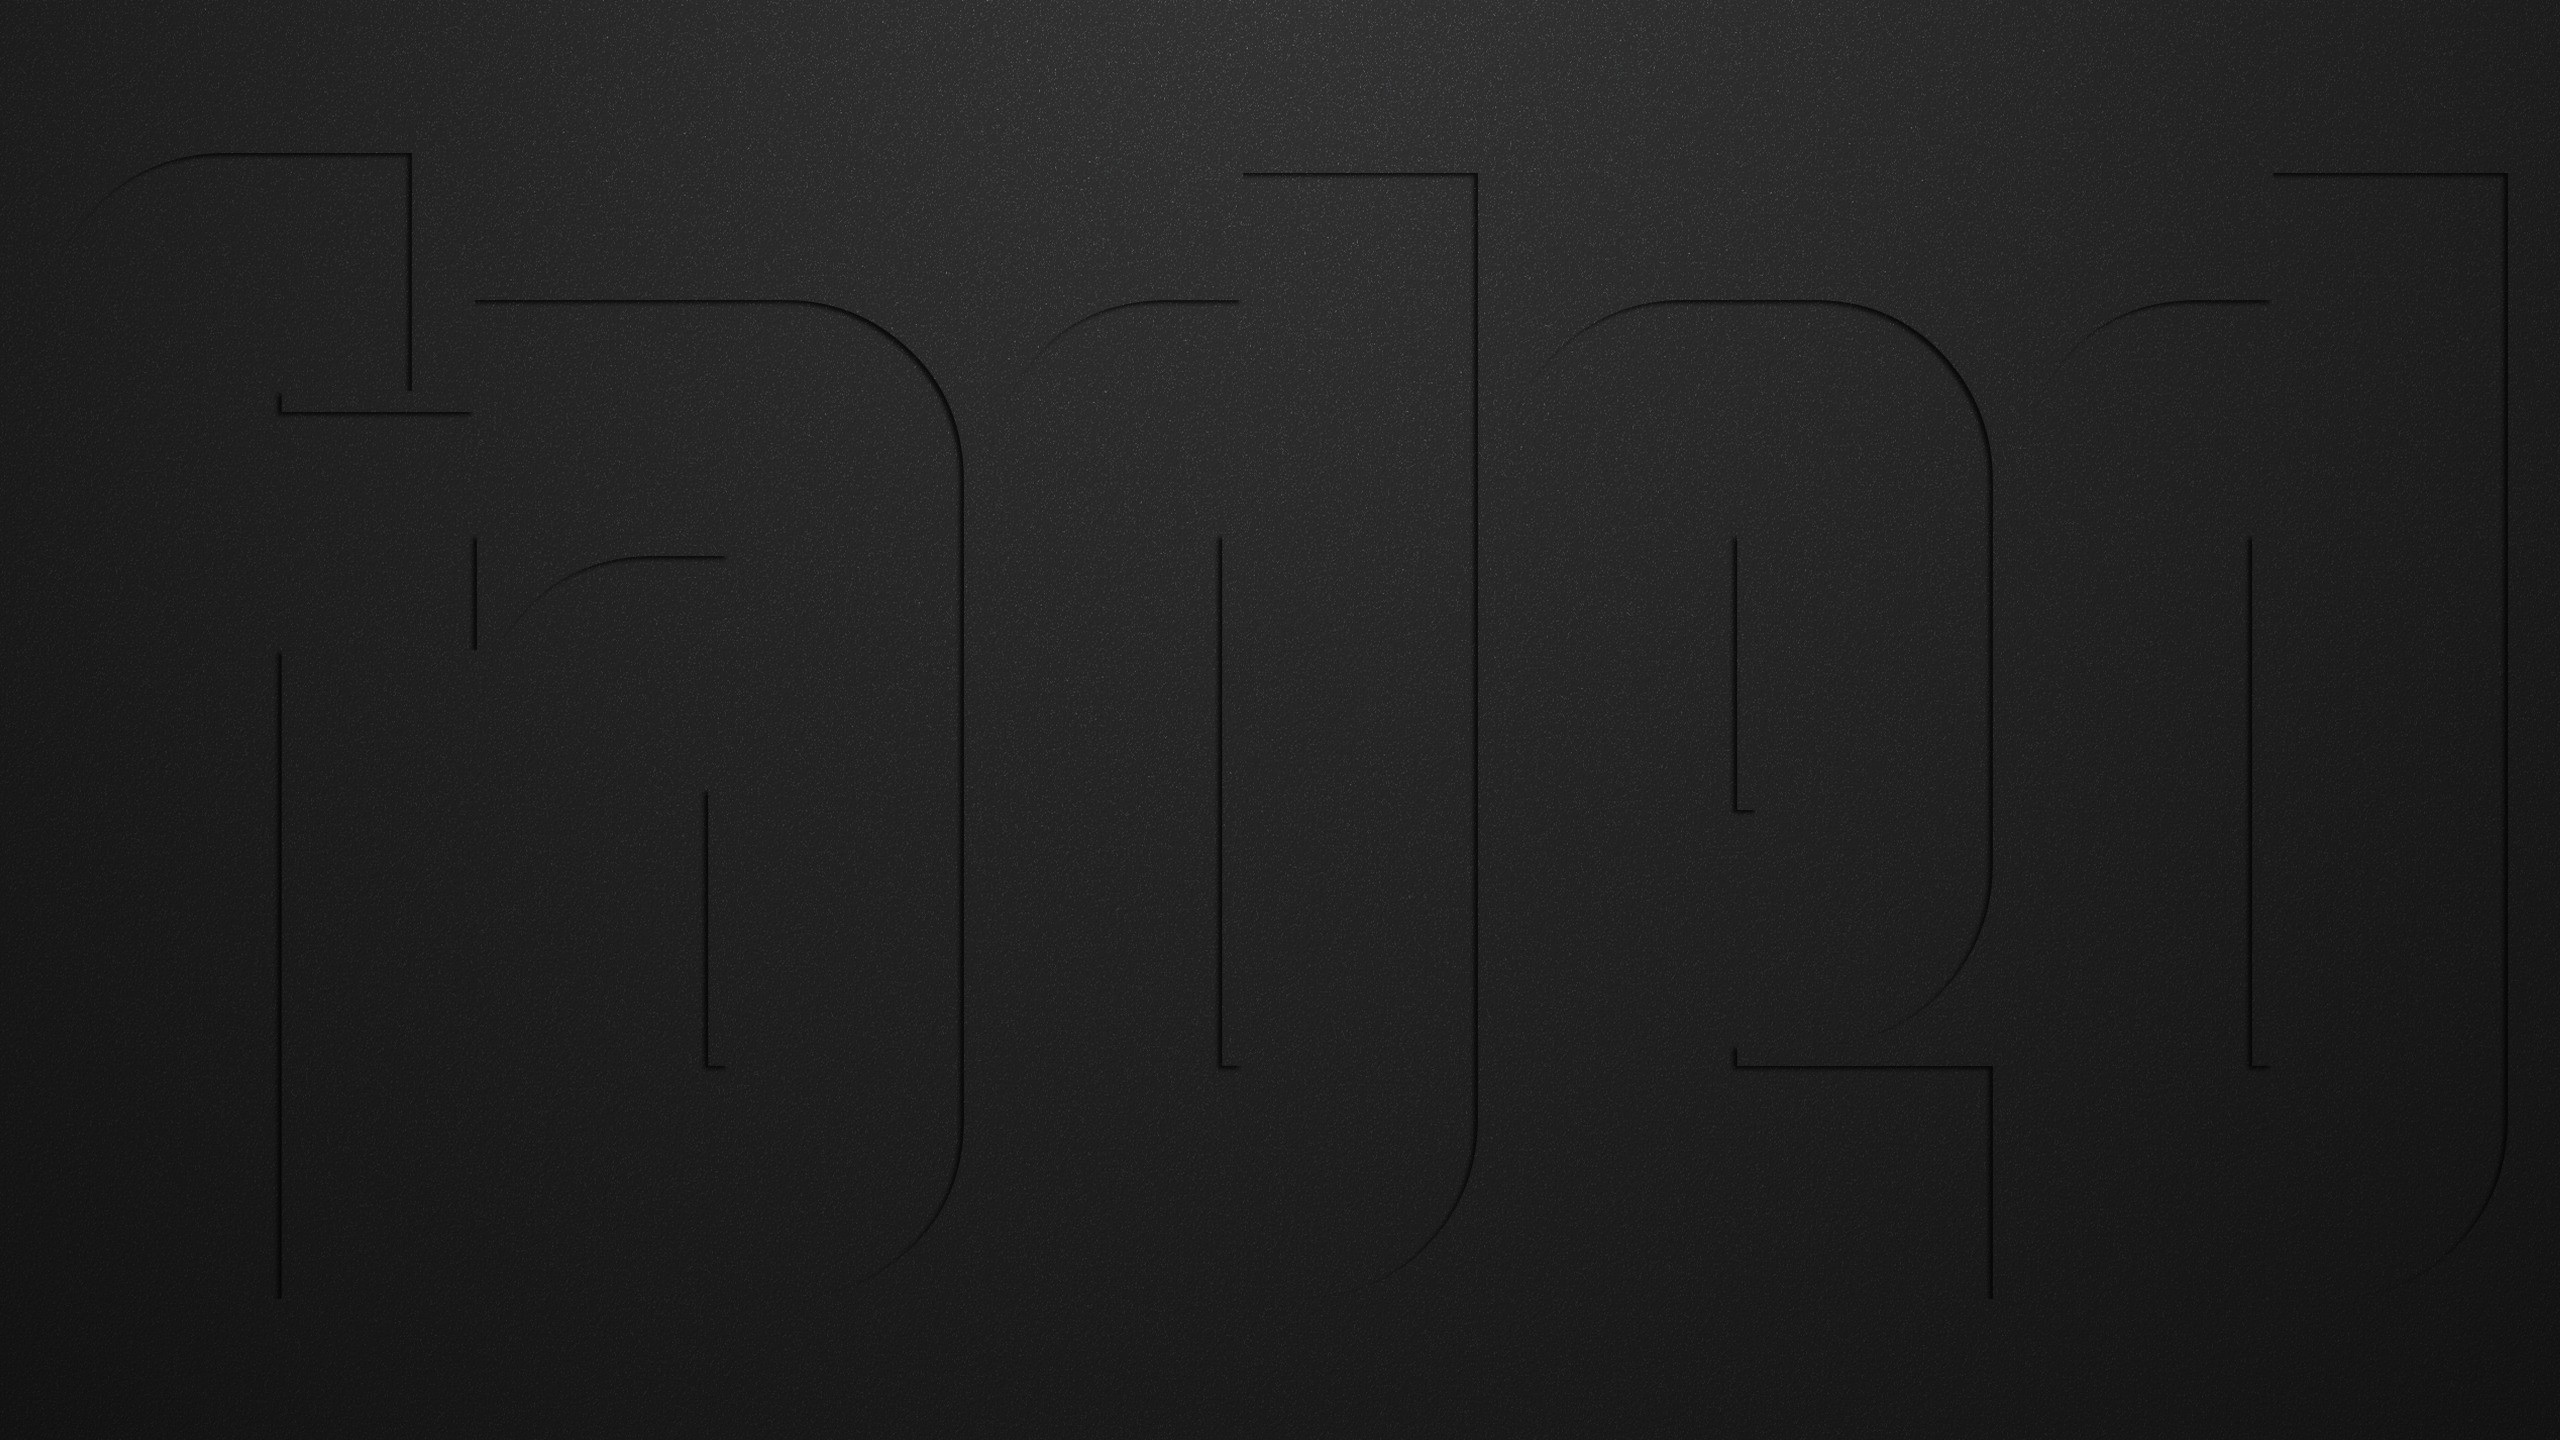 General 2560x1440 minimalism black typography dark background